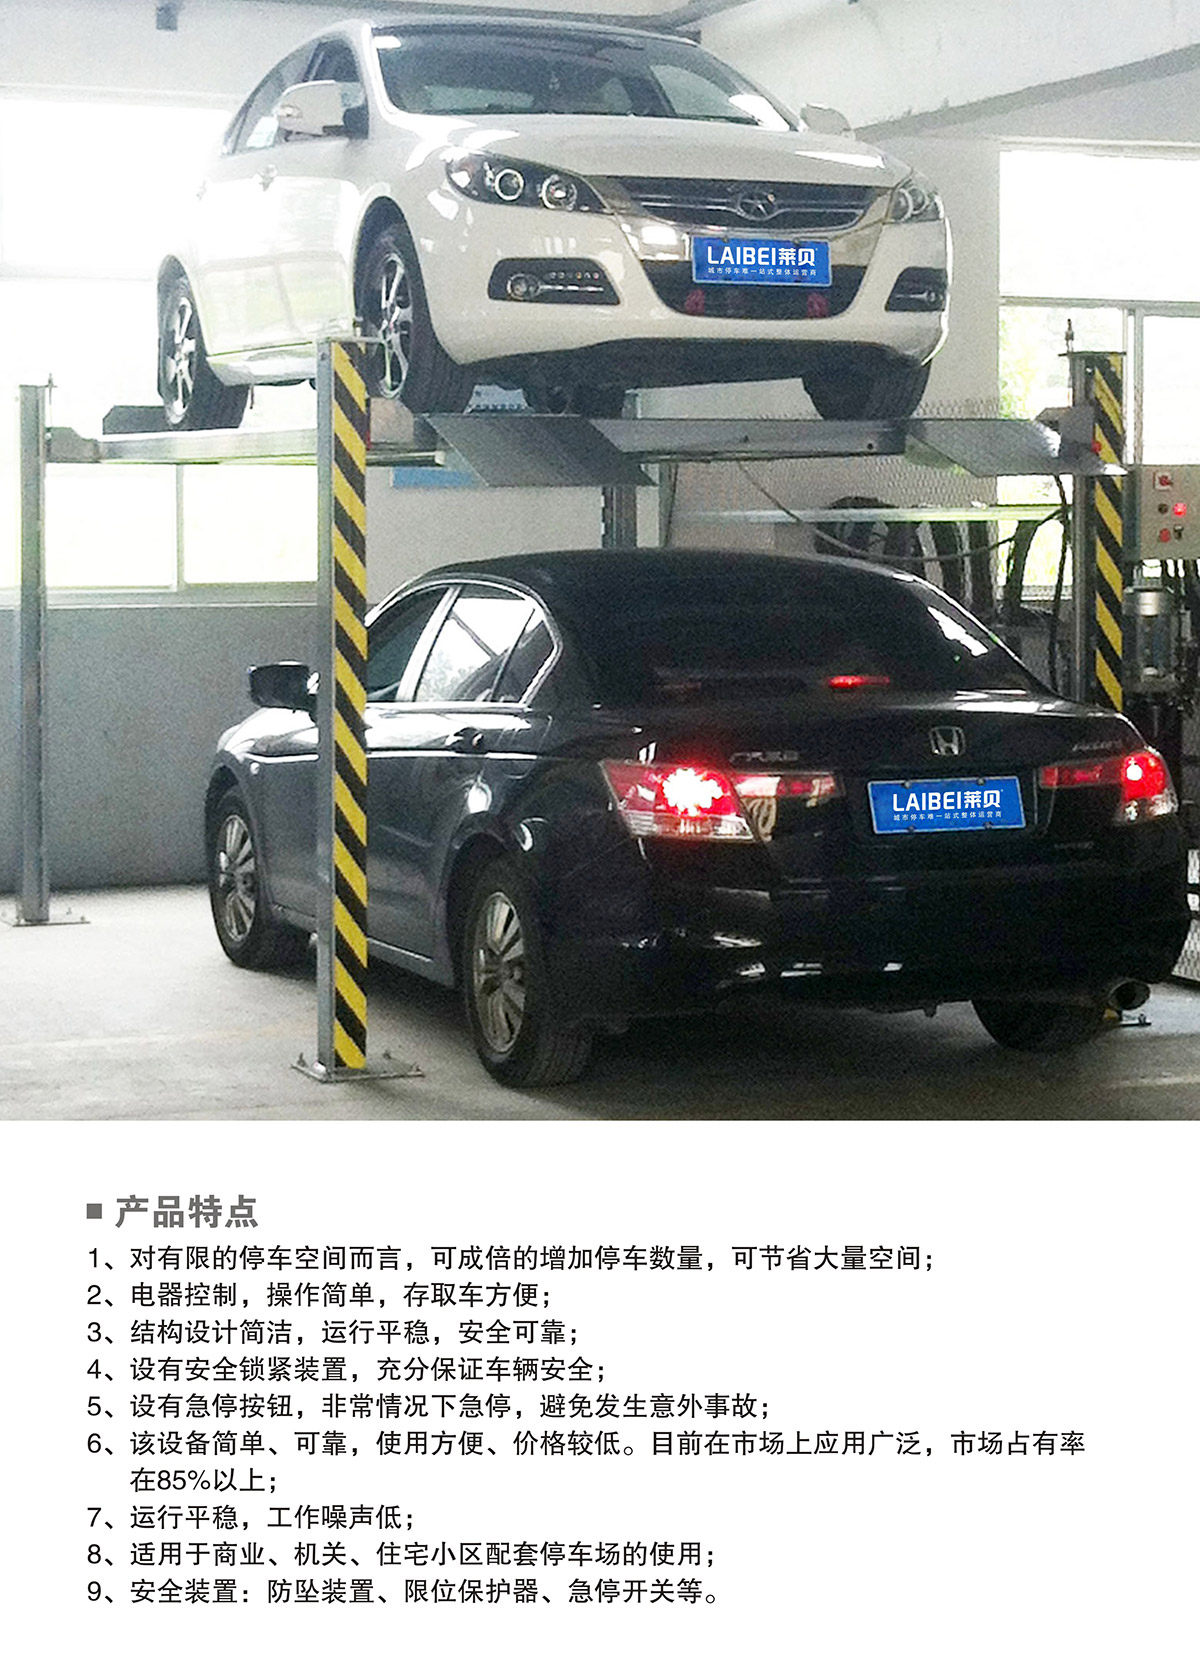 重庆PJS四柱简易升降立体停车设备产品特点.jpg